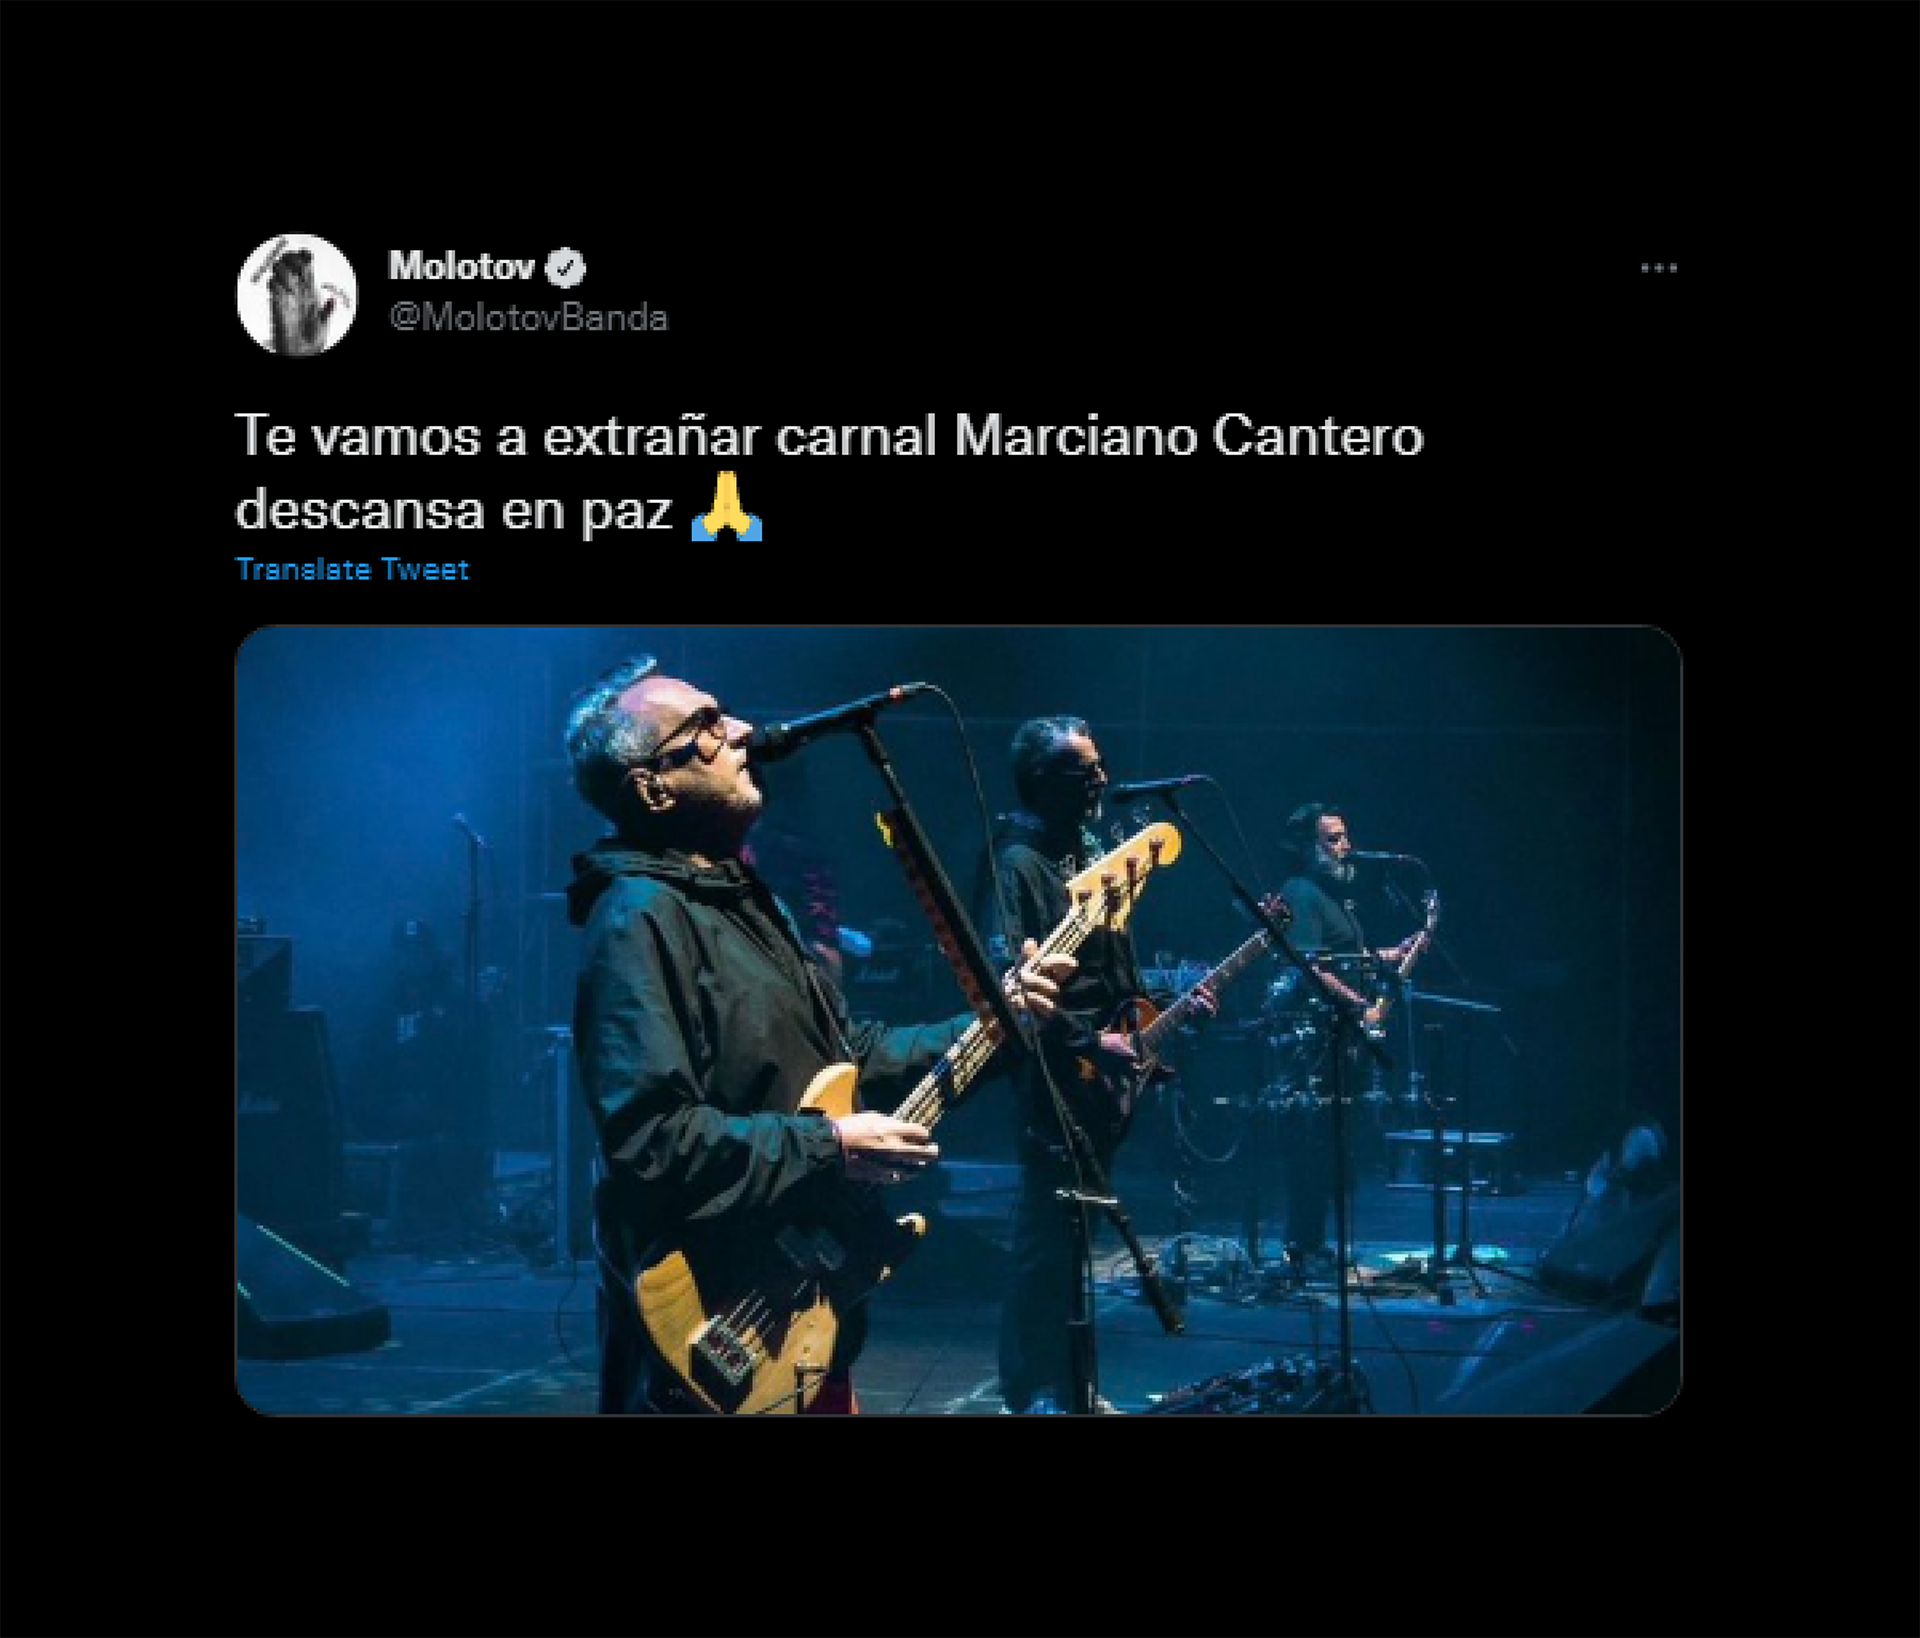 Murió Marciano Cantero: “Mucha tristeza y pena”, los mensajes de despedida  al músico en las redes sociales - Infobae